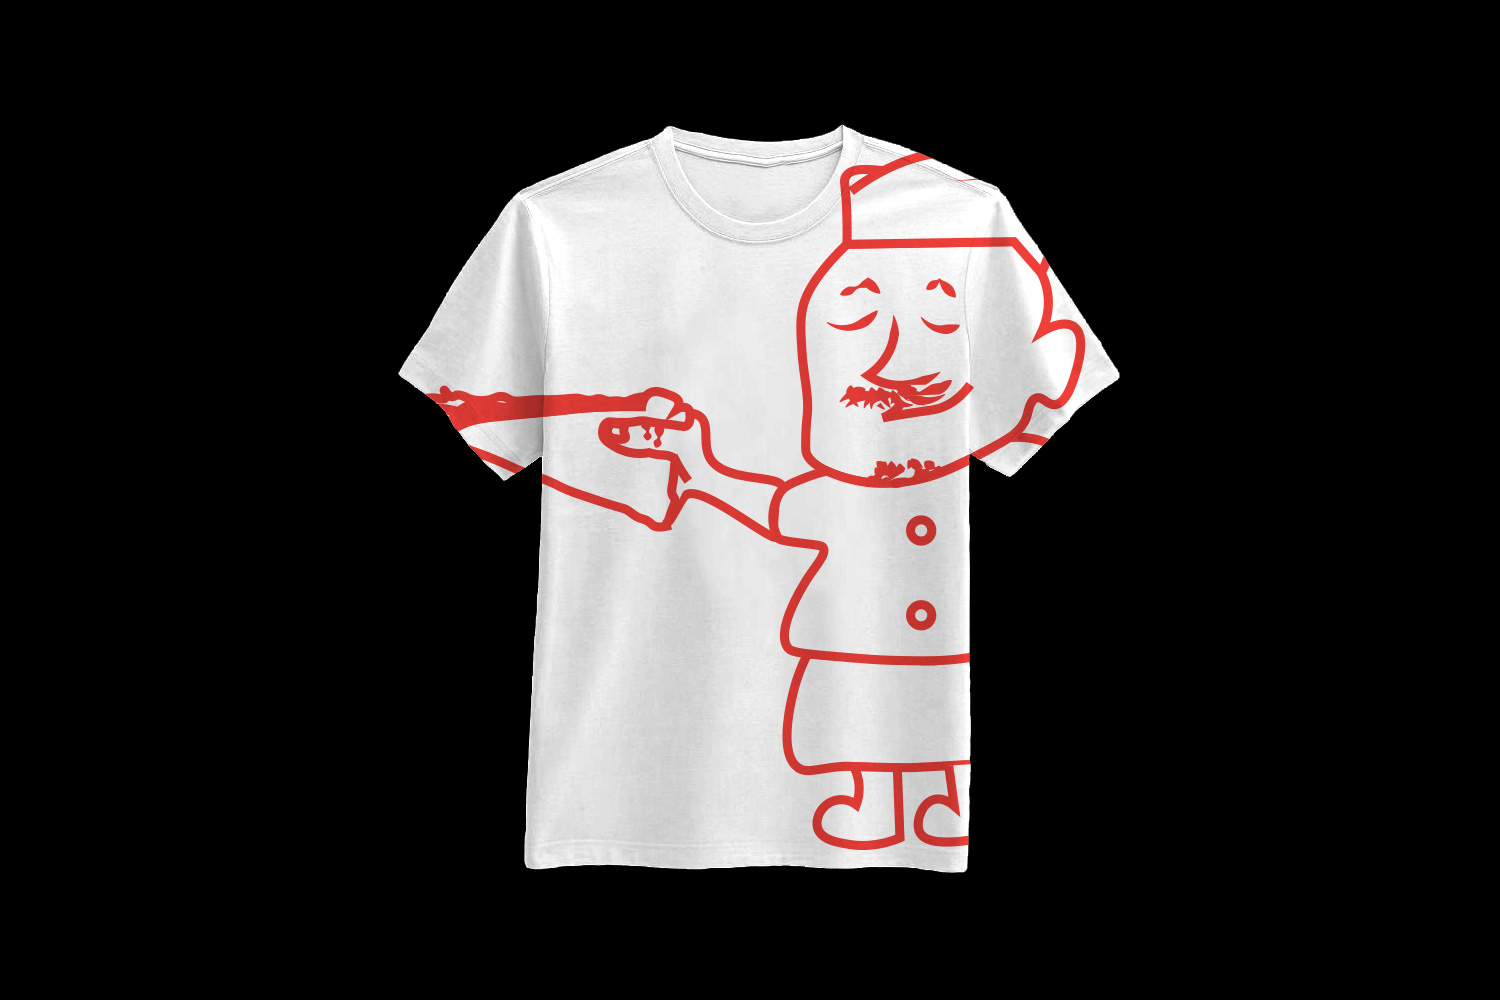 T-Shirt merchandise featuring Joe.